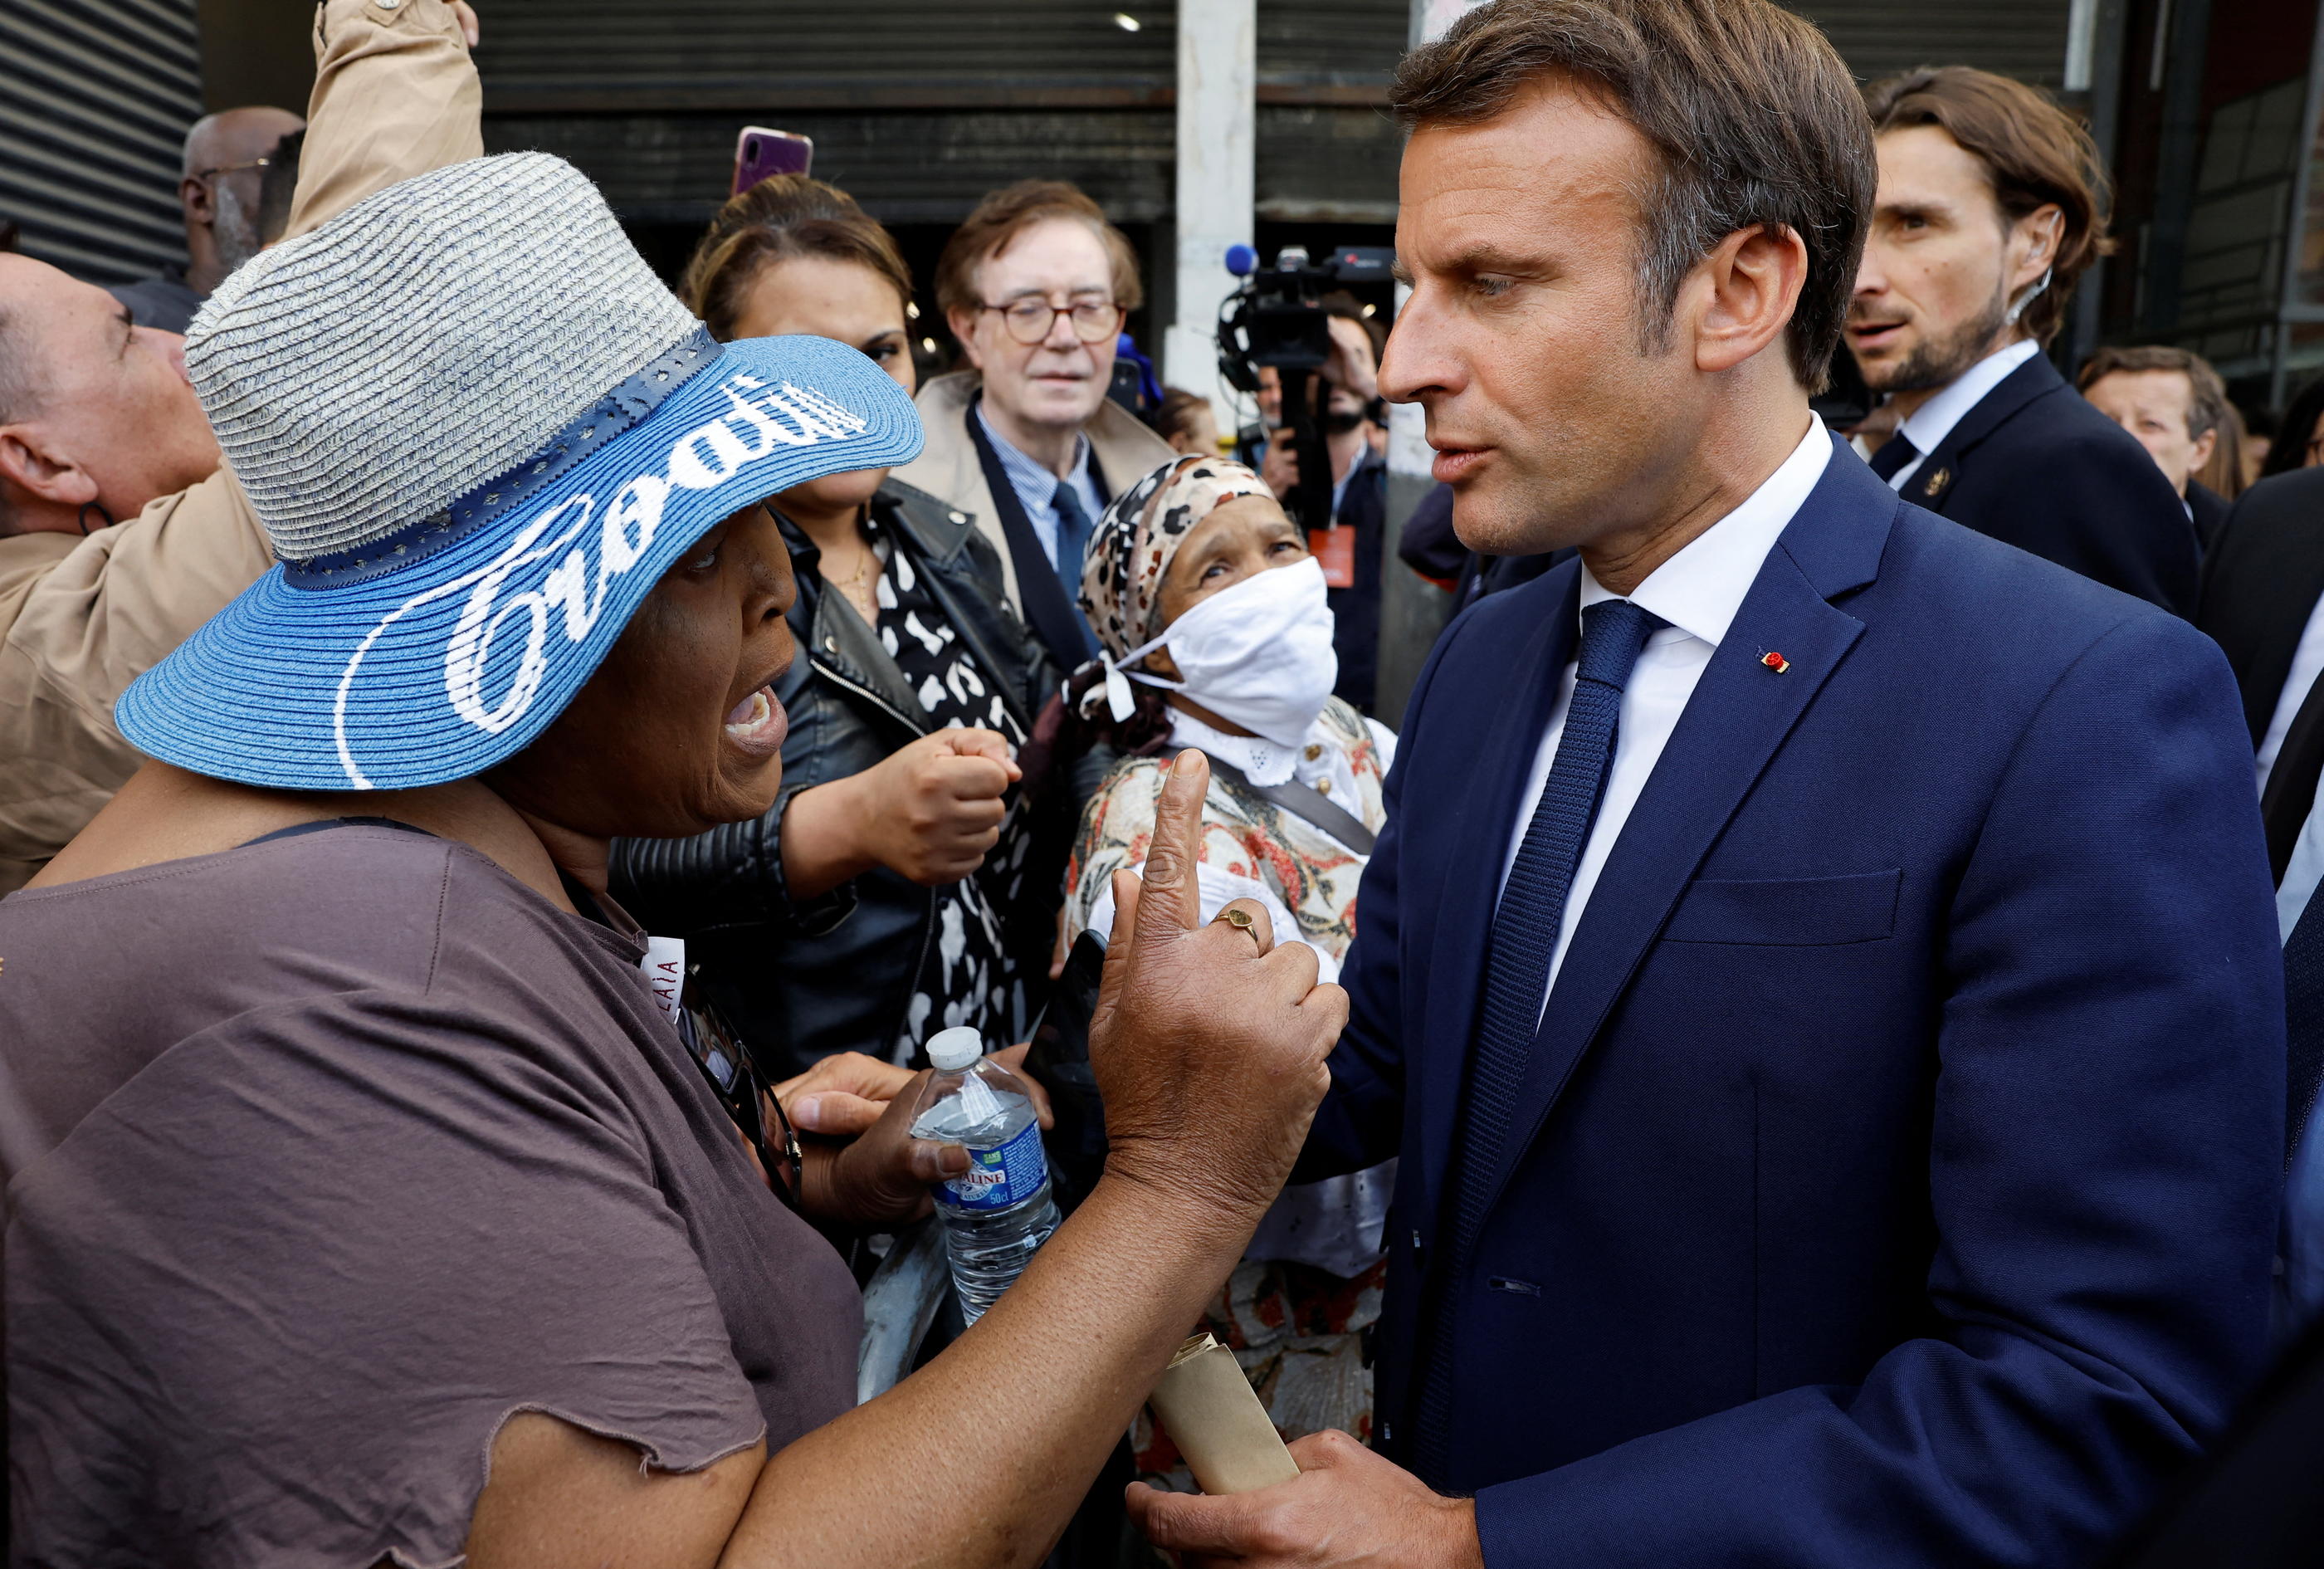 Ce mercredi, Emmanuel Macron s'est rendu à Clichy-sous-Bois (Seine-Saint-Denis) pour inaugurer un dojo de judo, destiné aux habitants de cette ville populaire. Il y a été interpellé par de nombreux riverains. REUTERS/Christian Hartmann/Pool